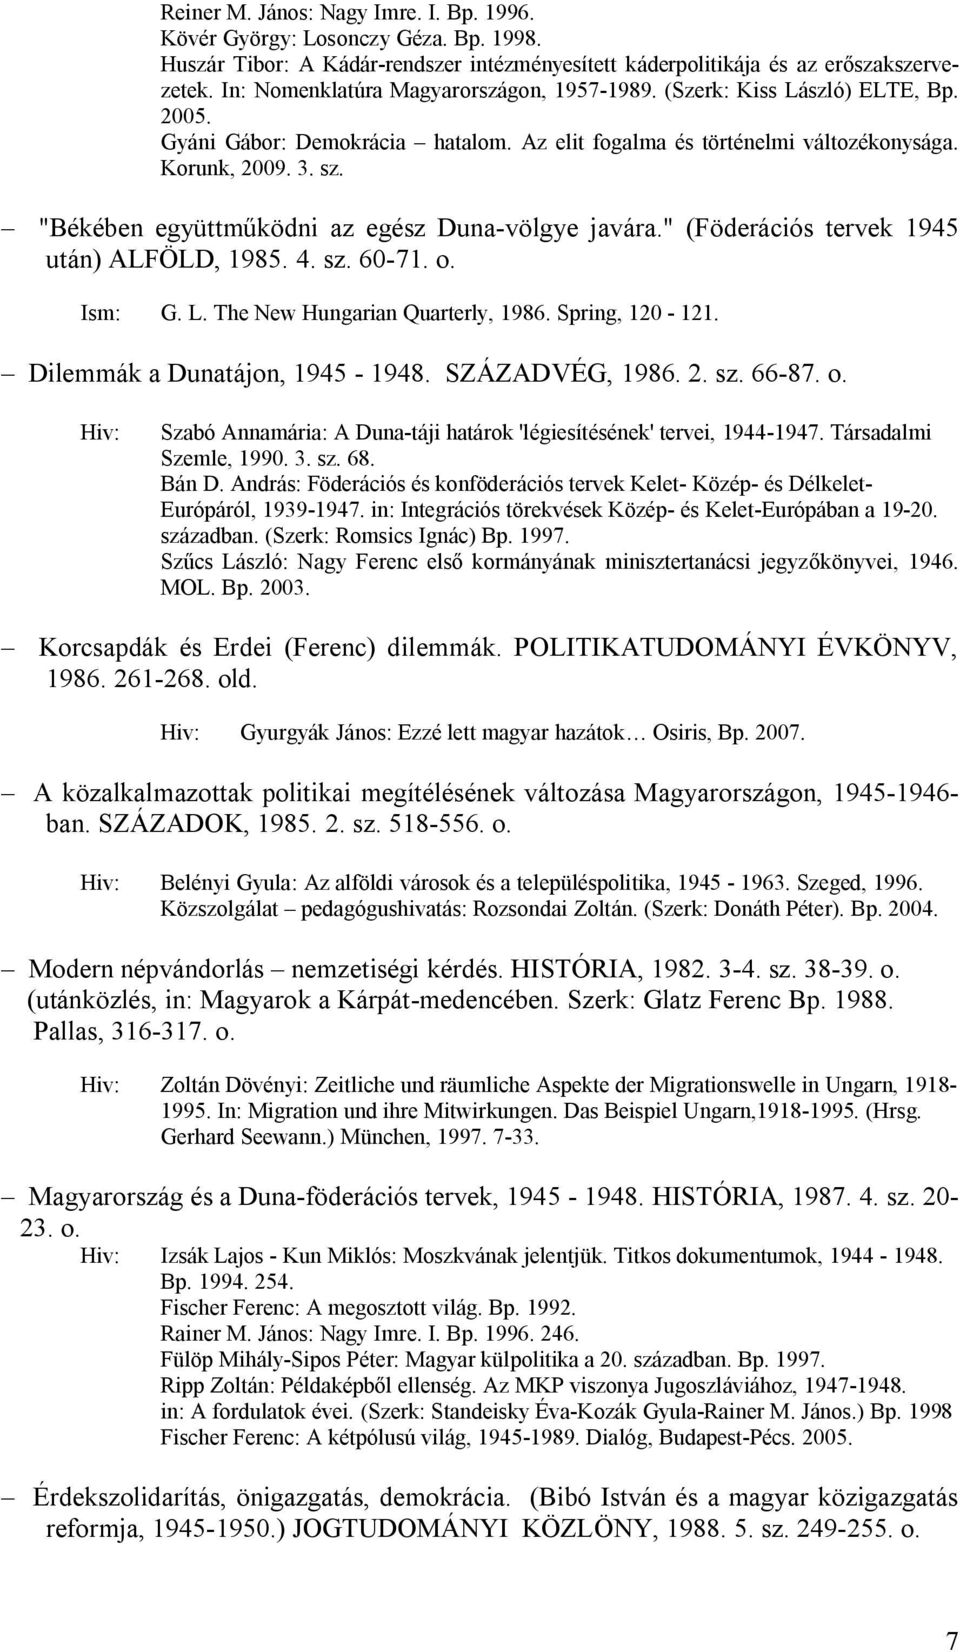 "Békében együttműködni az egész Duna-völgye javára." (Föderációs tervek 1945 után) ALFÖLD, 1985. 4. sz. 60-71. o. Ism: G. L. The New Hungarian Quarterly, 1986. Spring, 120-121.